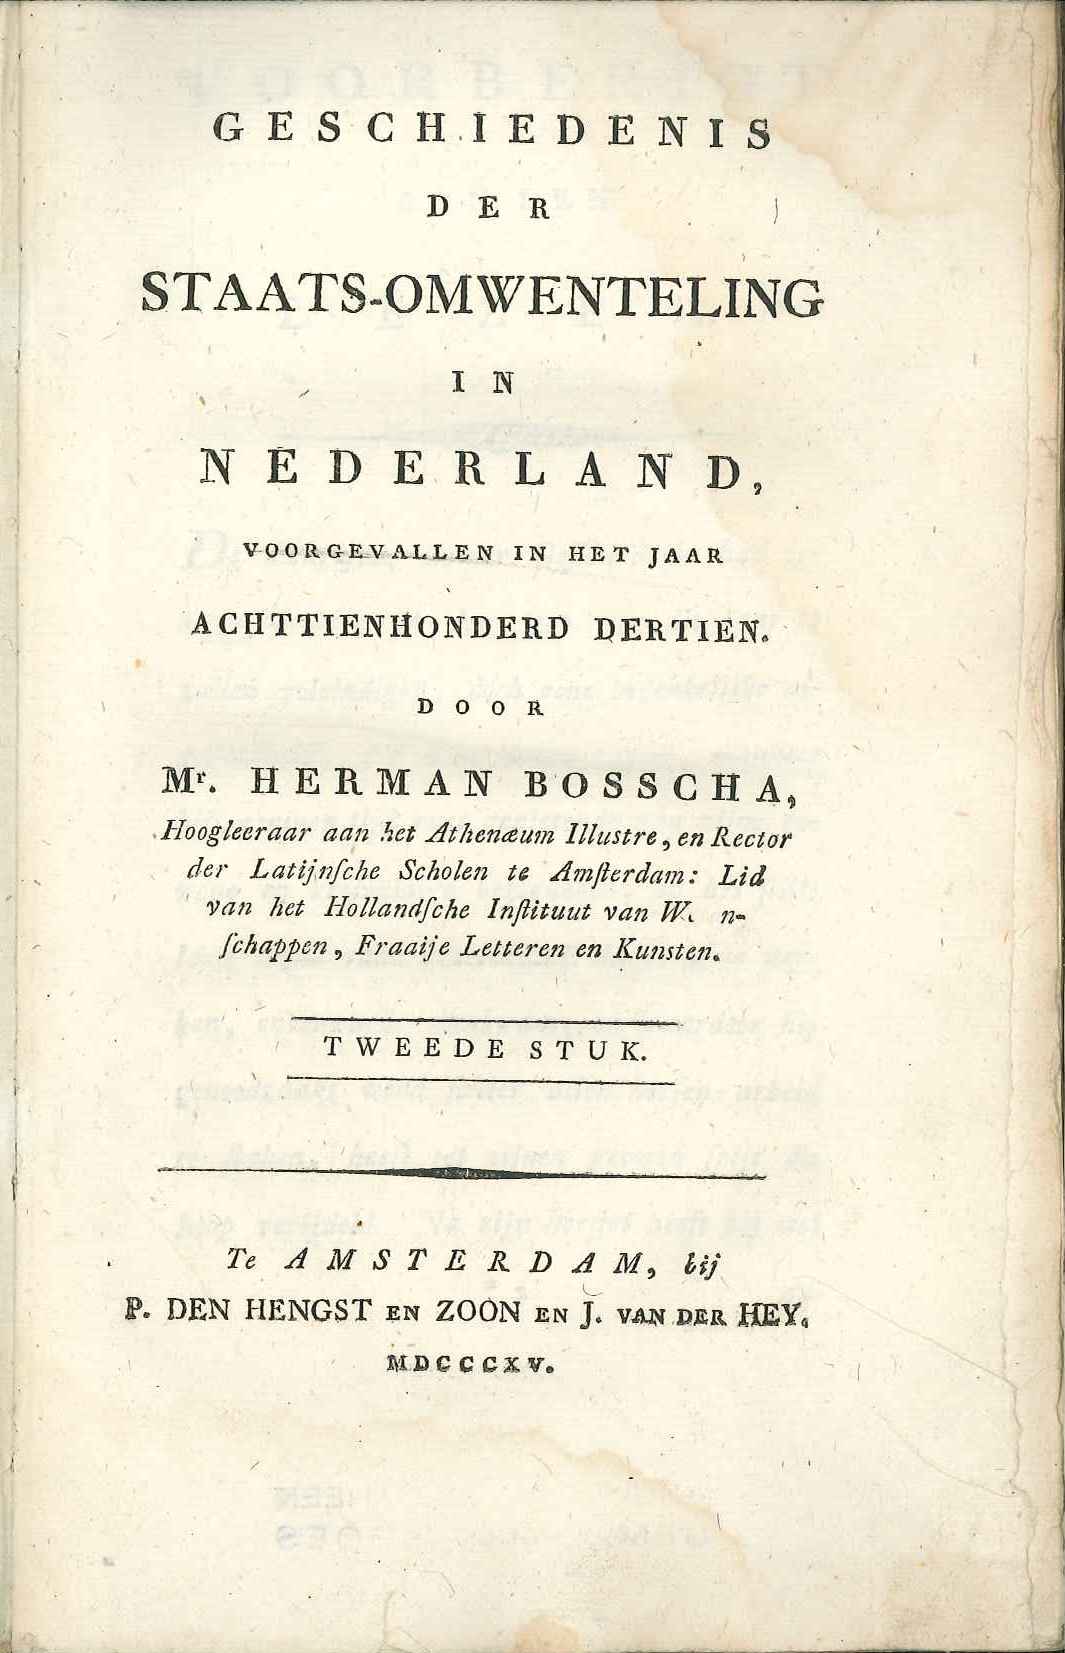 Geschiedenis van Nederland in 1813, H. Bosscha 1815.